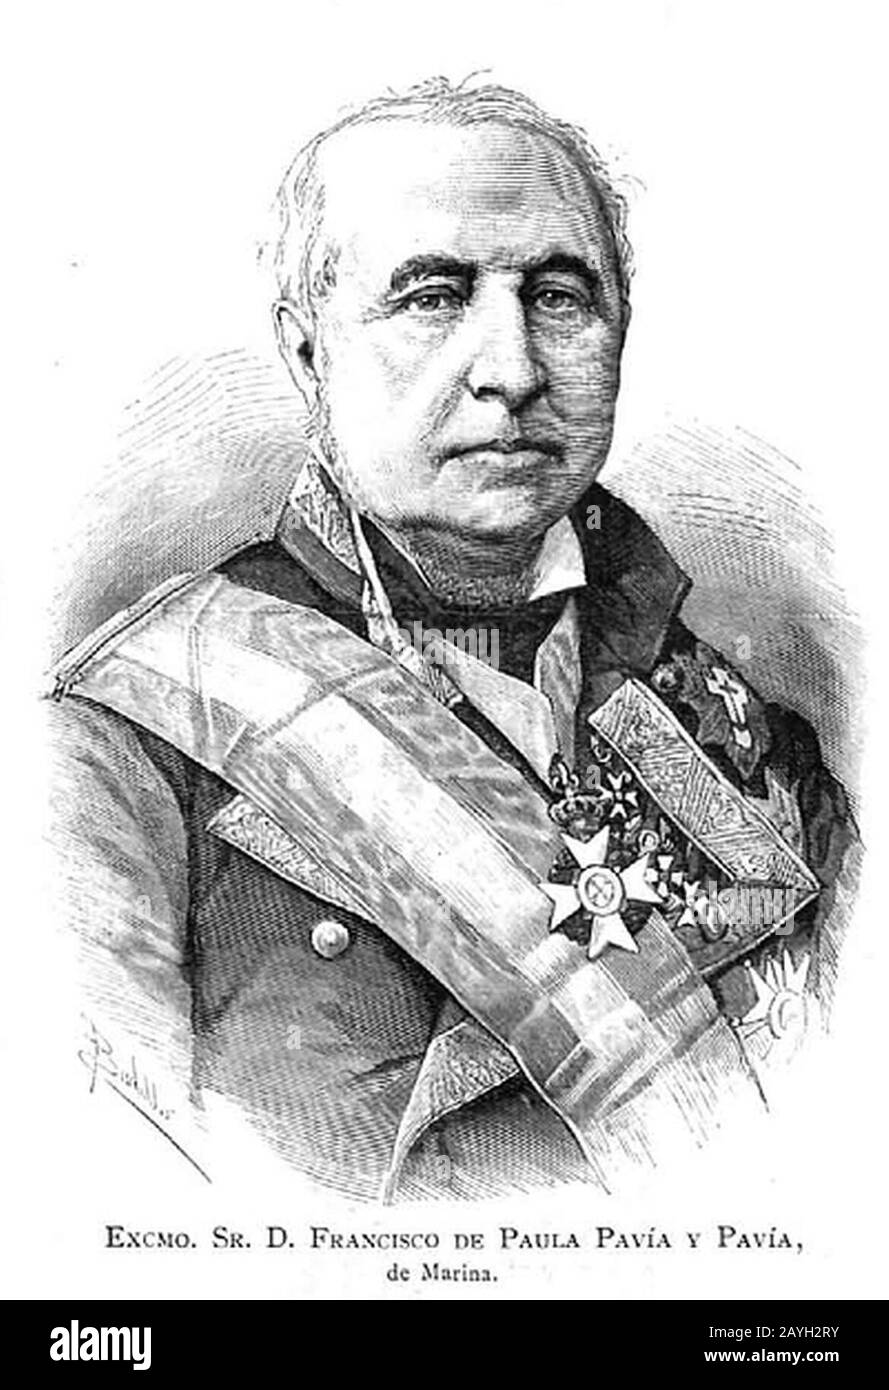 Francisco de Paula Pavía y Pavía en la Ilustración Española y americana. Foto Stock